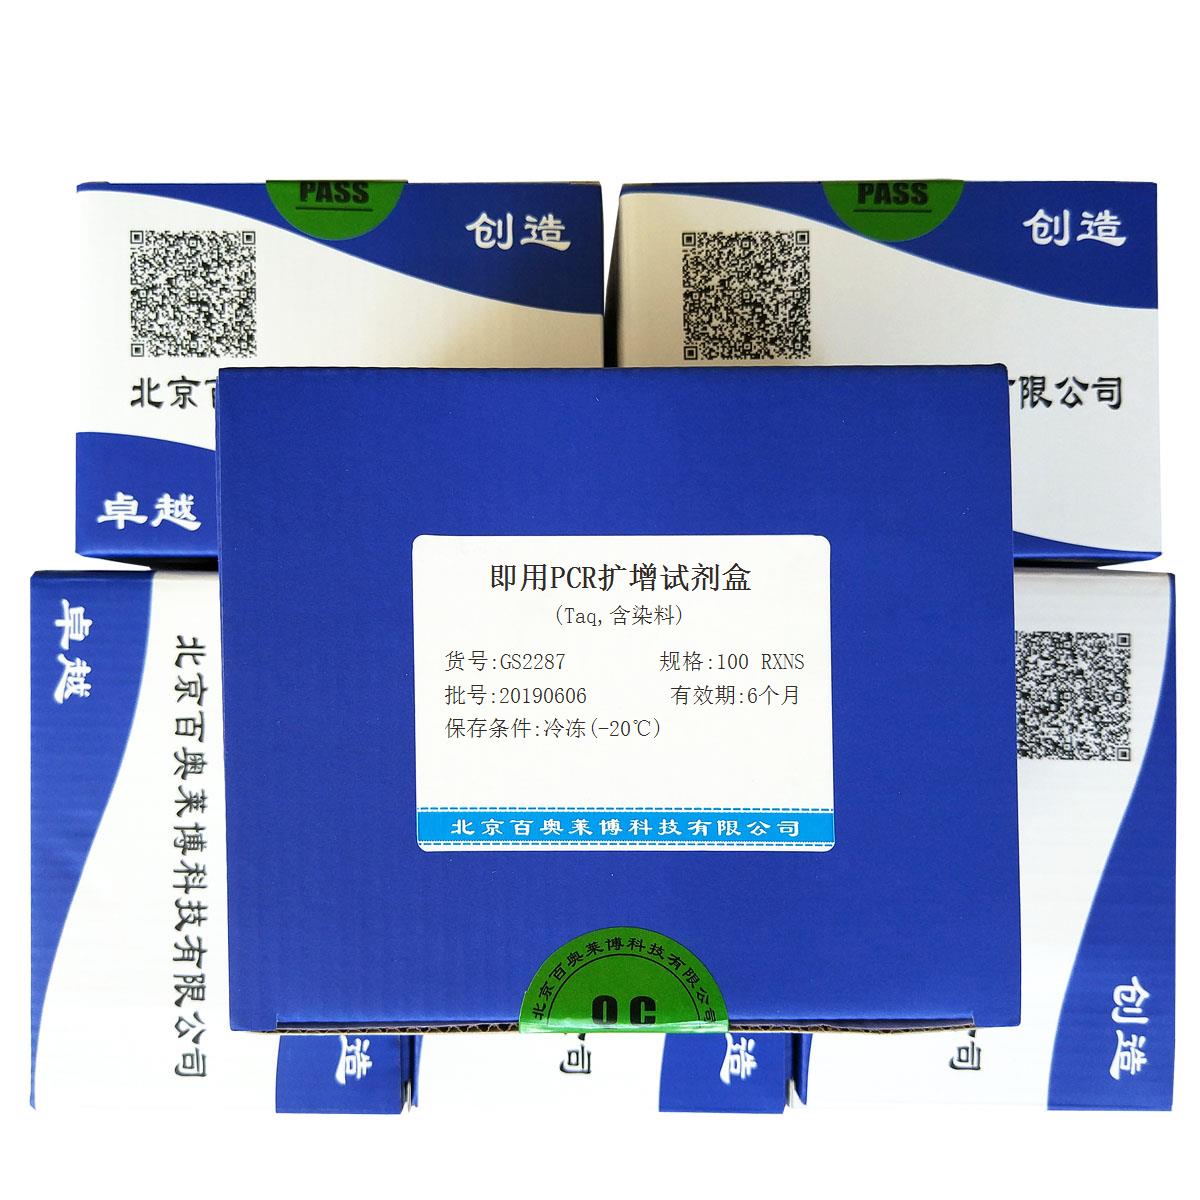 即用PCR扩增试剂盒(Taq,含染料)北京现货